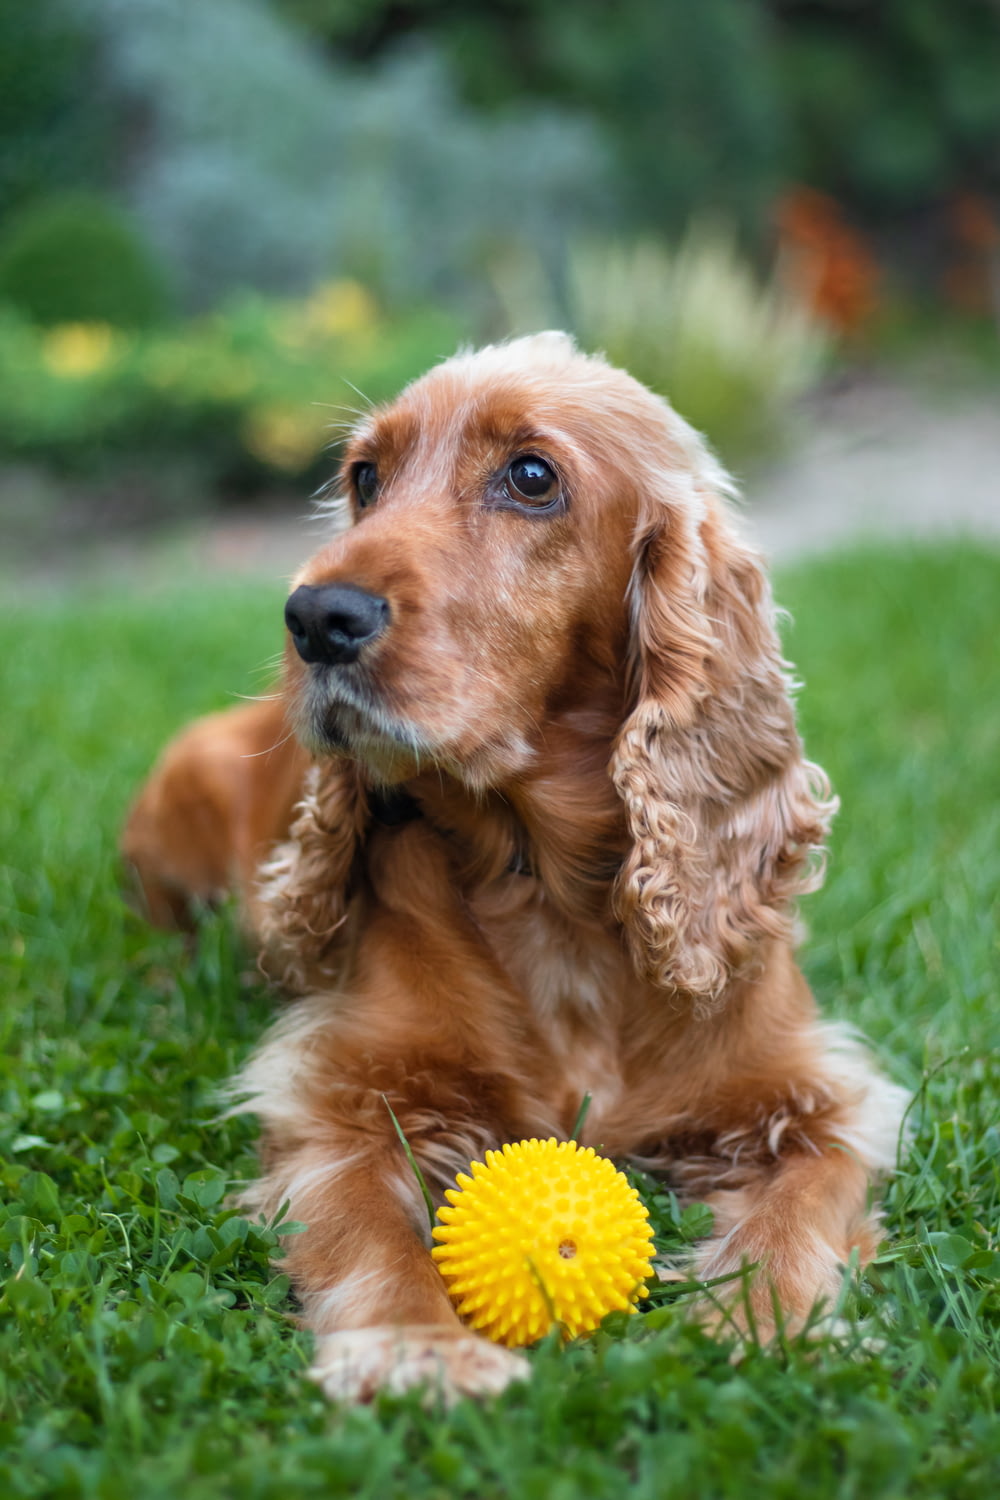 cane a pelo lungo marrone sul campo di erba verde durante il giorno